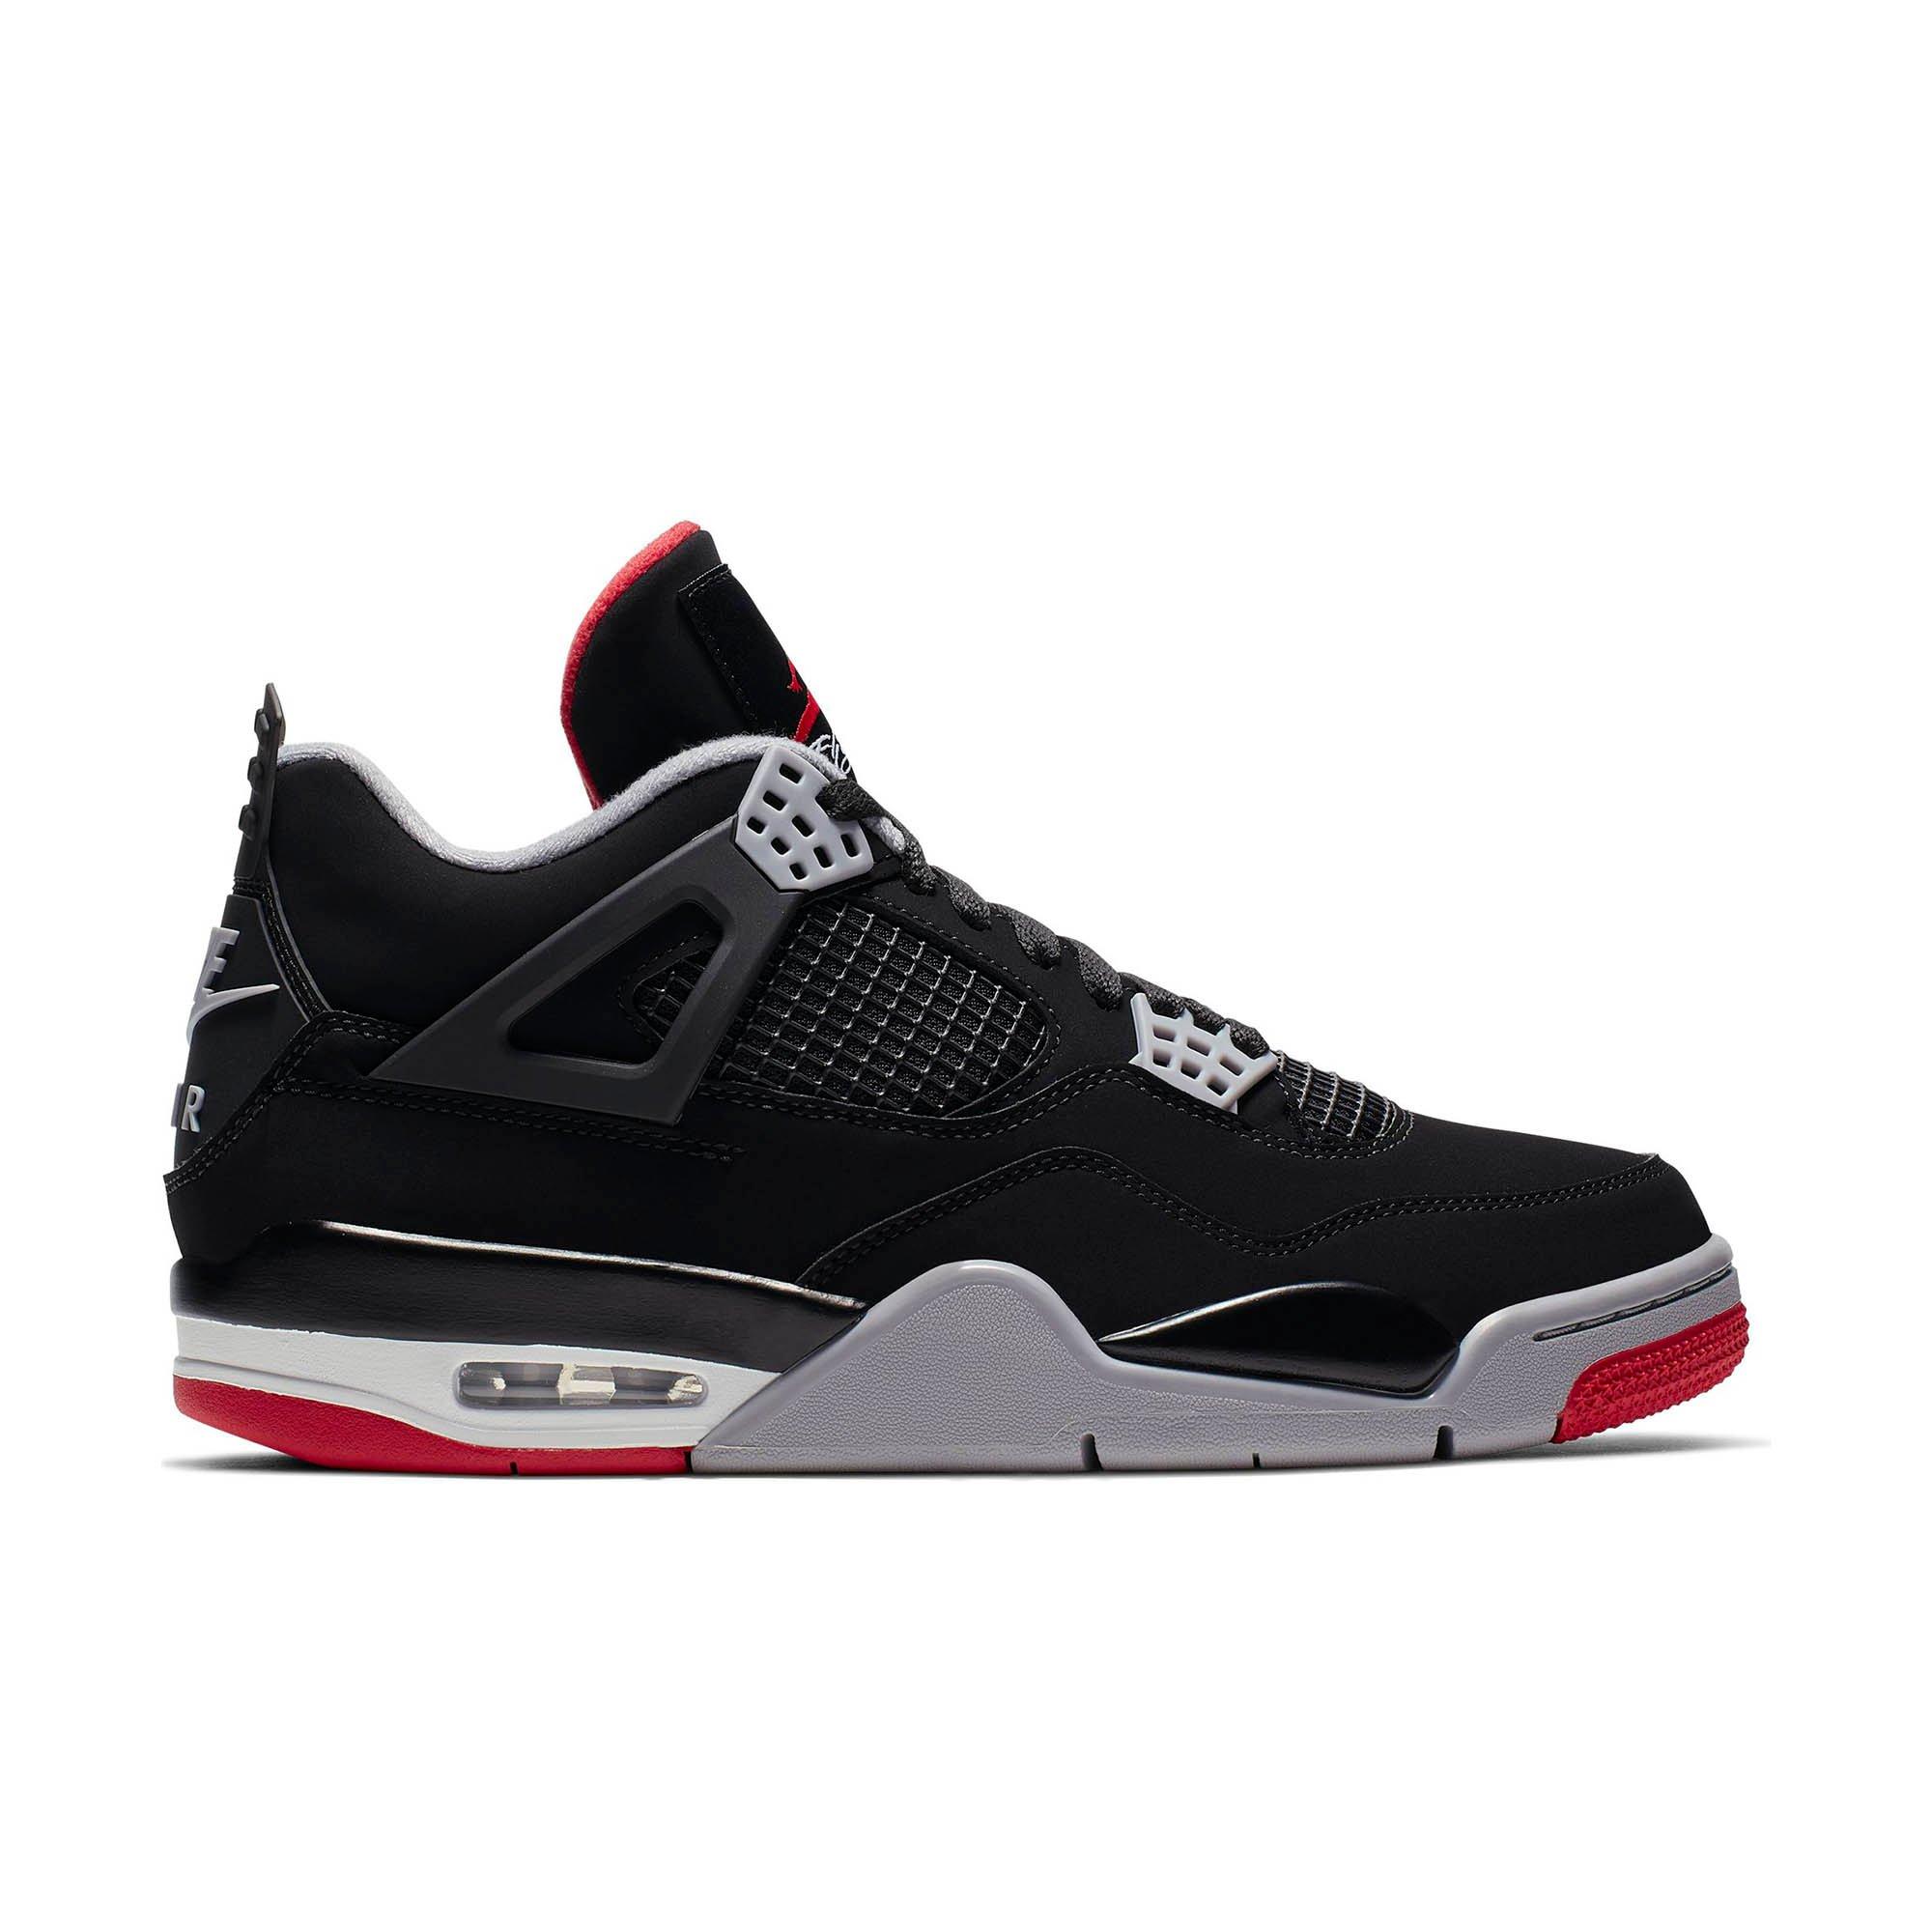 Sneakers Release- Air Jordan Retro 4 OG 